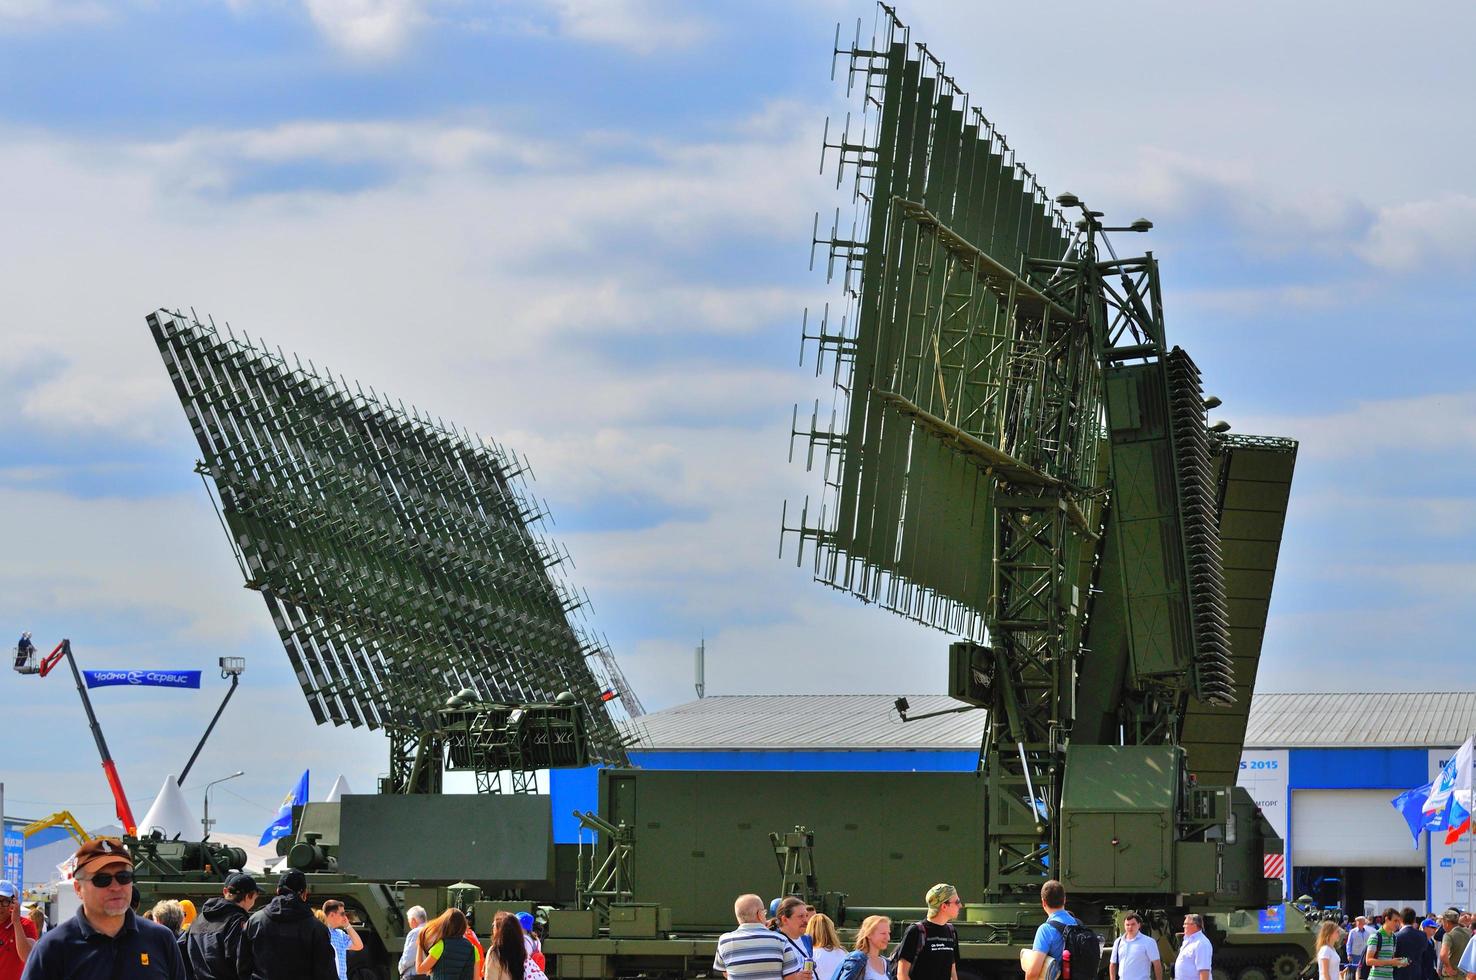 moscou, russie - août 2015 radar mobile présenté à la 12e ma photo